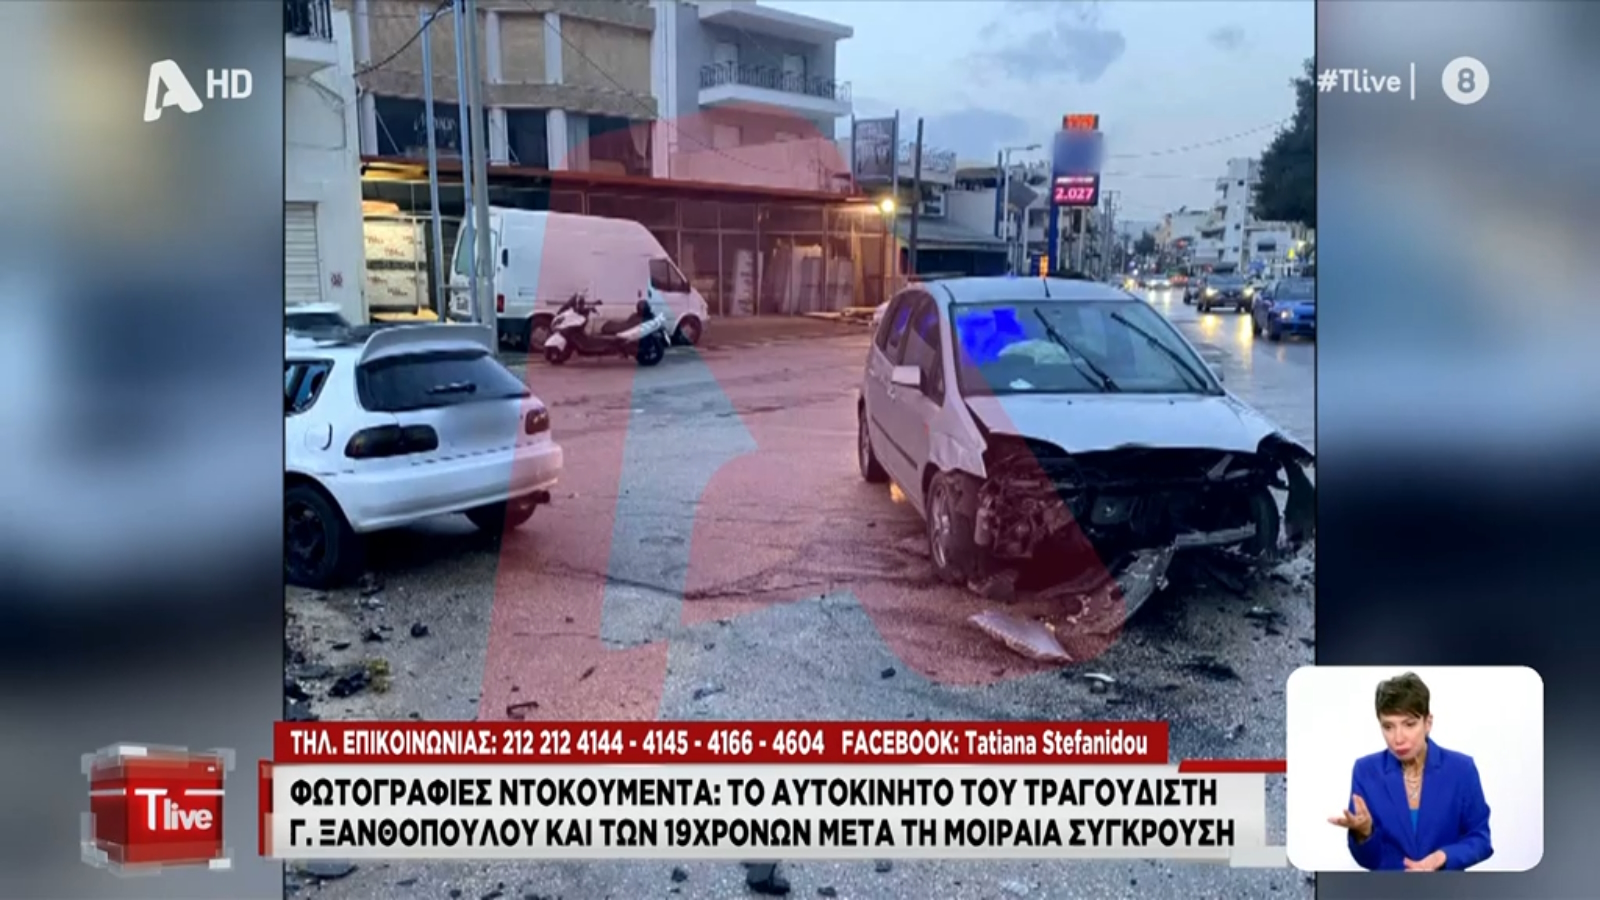 Γιάννης Ξανθόπουλος: Νέο βίντεο ντοκουμέντο από το τροχαίο - Οι φωτογραφίες  των οχημάτων μετά το δυστύχημα - Znews